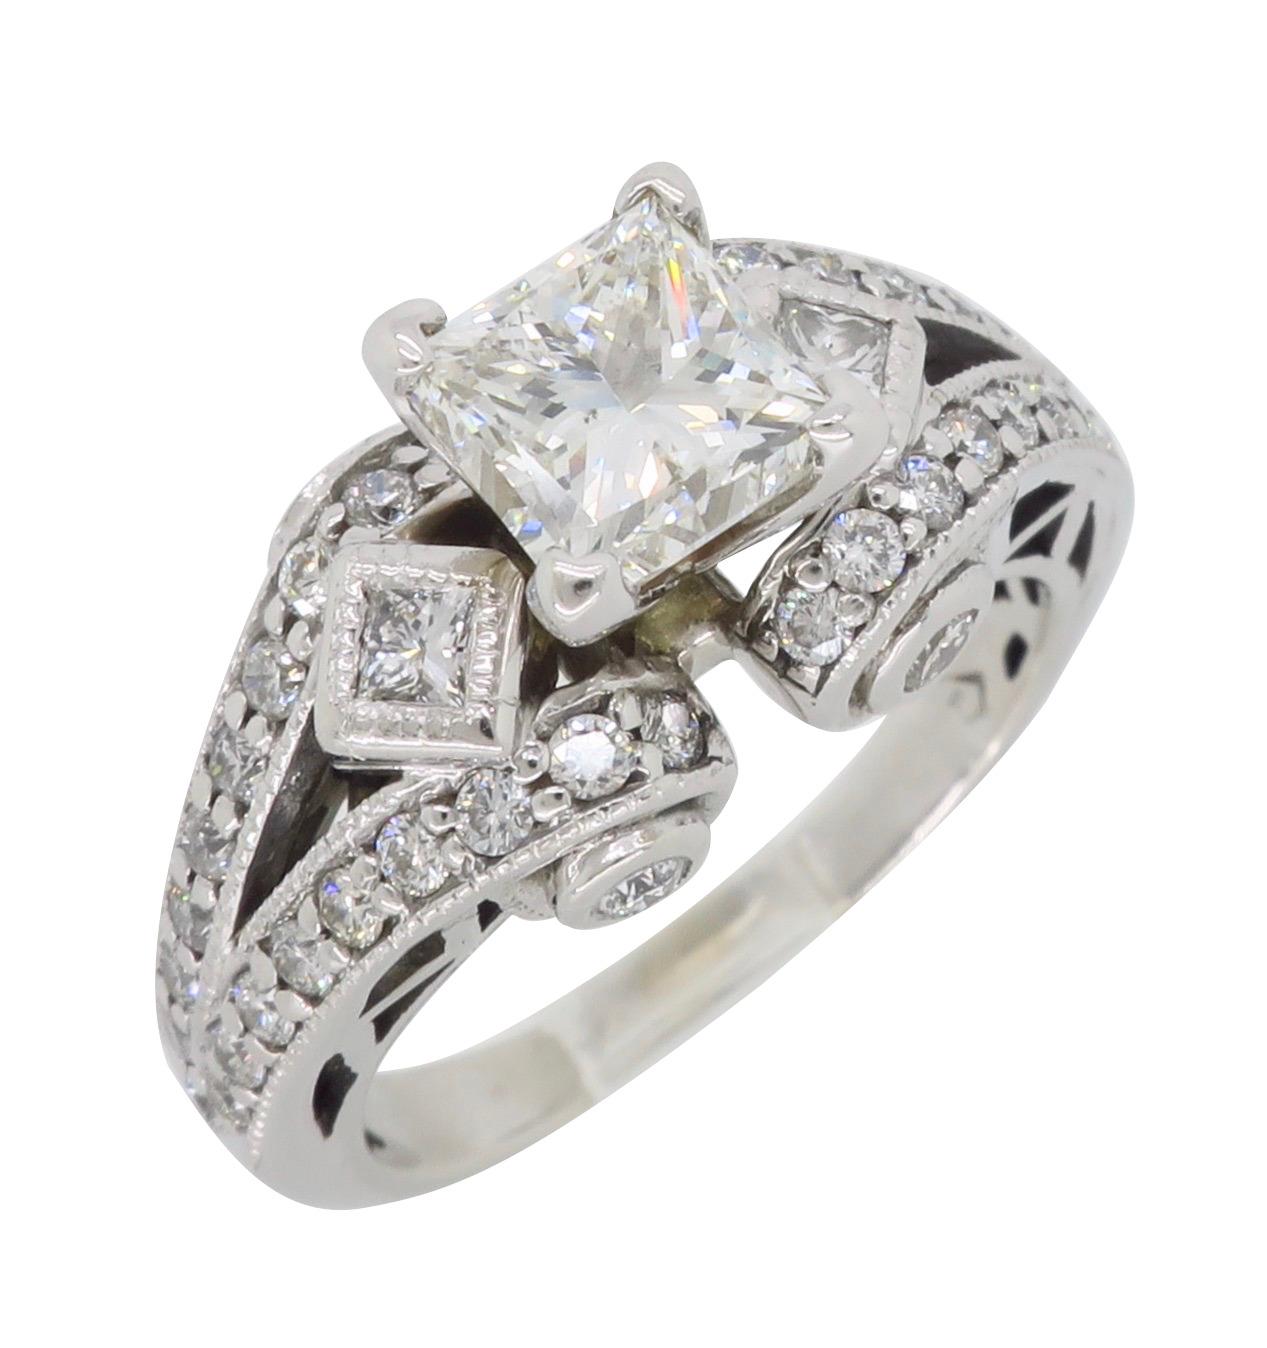 18 Karat White Gold 2.32 Carat Princess Cut Diamond Engagement Ring 7